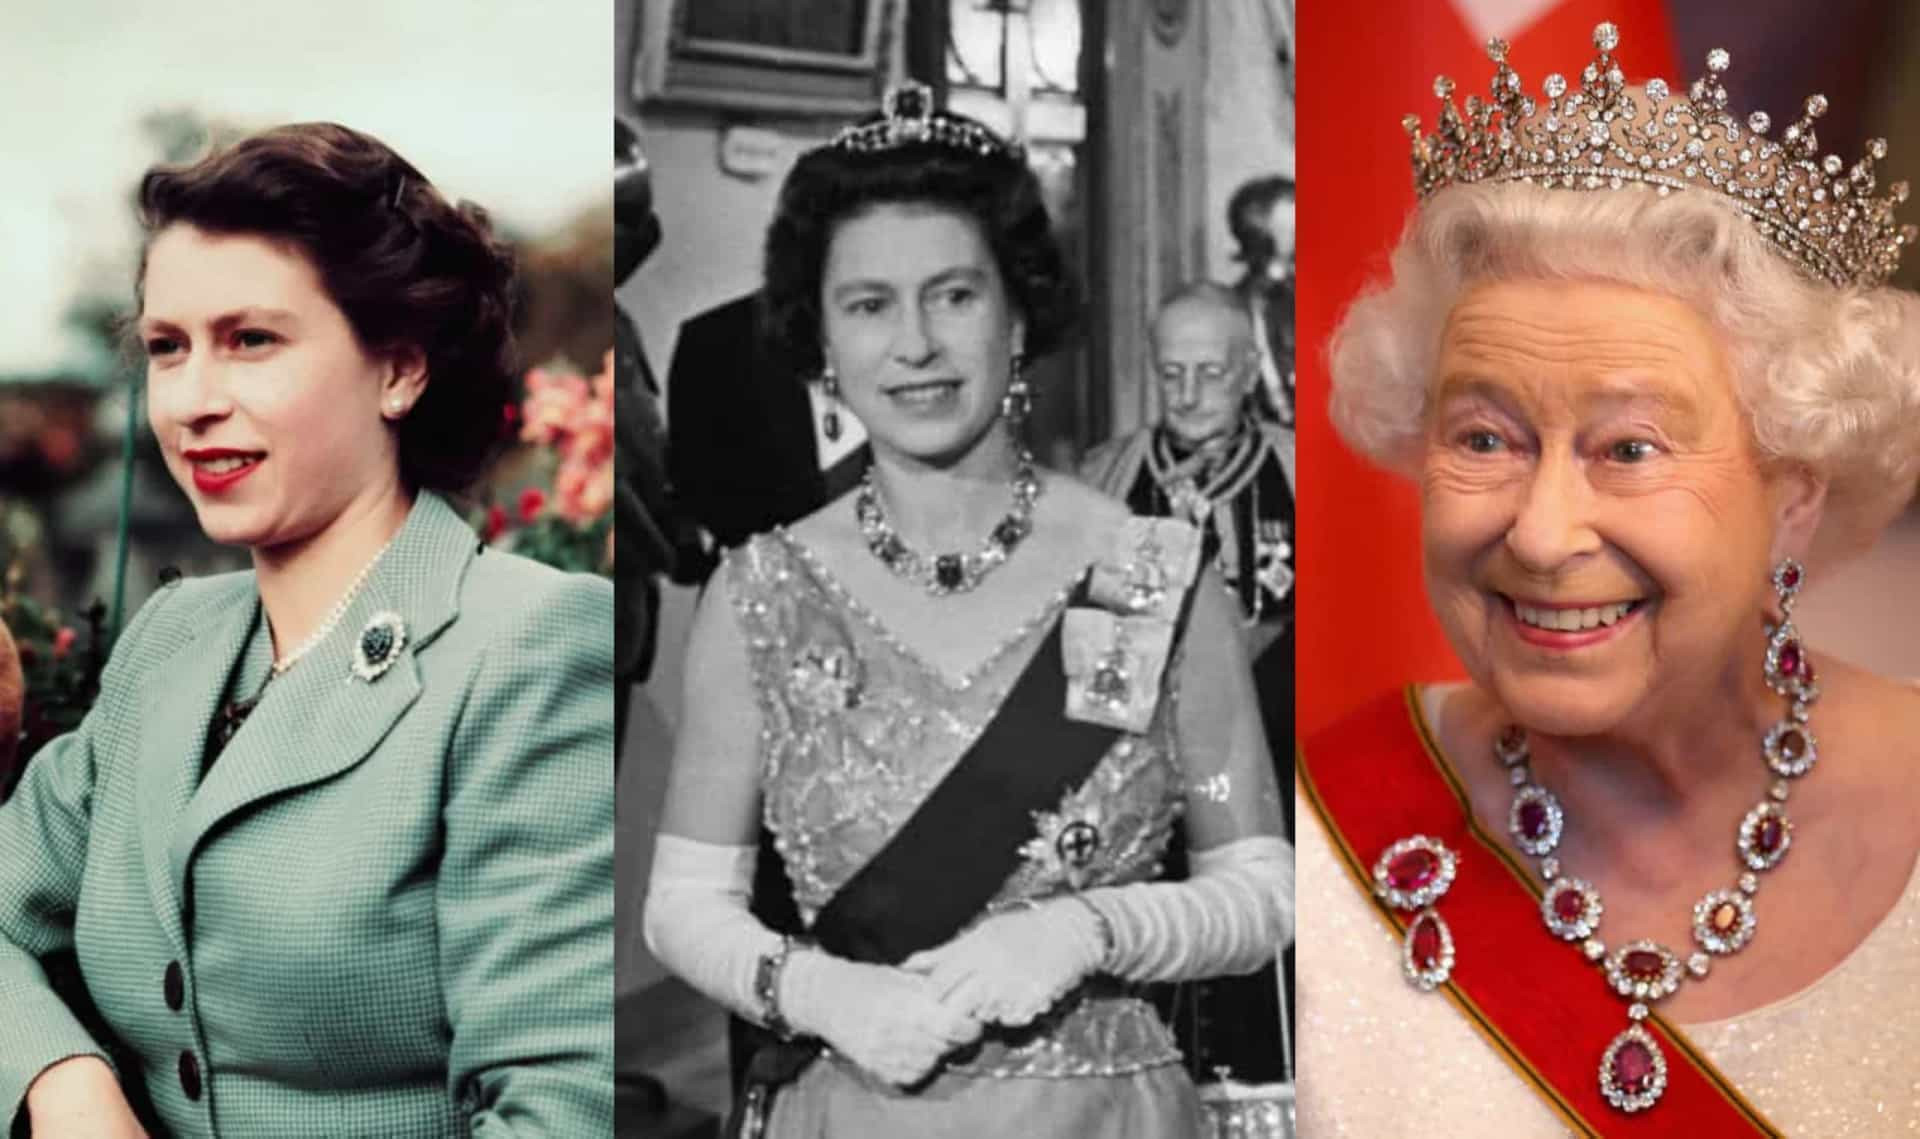 <p>Sie wurde von Prinzessin zur Königin, sie wurde Mutter und <a href="https://de.starsinsider.com/celebrity/251385/diese-beruehmtheiten-hatten-koenigliche-vorfahren" rel="noopener">Monarchin</a>: Königin Elisabeth II. hat so einiges erlebt in ihrem fast ein Jahrhundert währenden Leben.</p> <p>Am 6. Februar 1952 erhielt die damalige Prinzessin Elisabeth die Nachricht, die ihr Leben für immer verändern würde: Ihr Vater, Könige Georg VI., war verstorben und sie würde zu Königin werden. Elisabeth II. sollte danach die erste britische Monarchin werden, die das Platin-Jubiläum erreichte – ein historischer Meilenstein.</p> <p>Sie saß sieben Jahrzehnte auf dem Thron und war damit die längste regierende britische Monarchin. Werfen wir einen Blick auf das Leben vor und nach ihrer Krönung. Klicken Sie sich durch die Galerie!</p><p>Sie können auch mögen:<a href="https://de.starsinsider.com/n/193110?utm_source=msn.com&utm_medium=display&utm_campaign=referral_description&utm_content=431003v4"> Die lustigsten Baby-Doppelgänger der Stars</a></p>